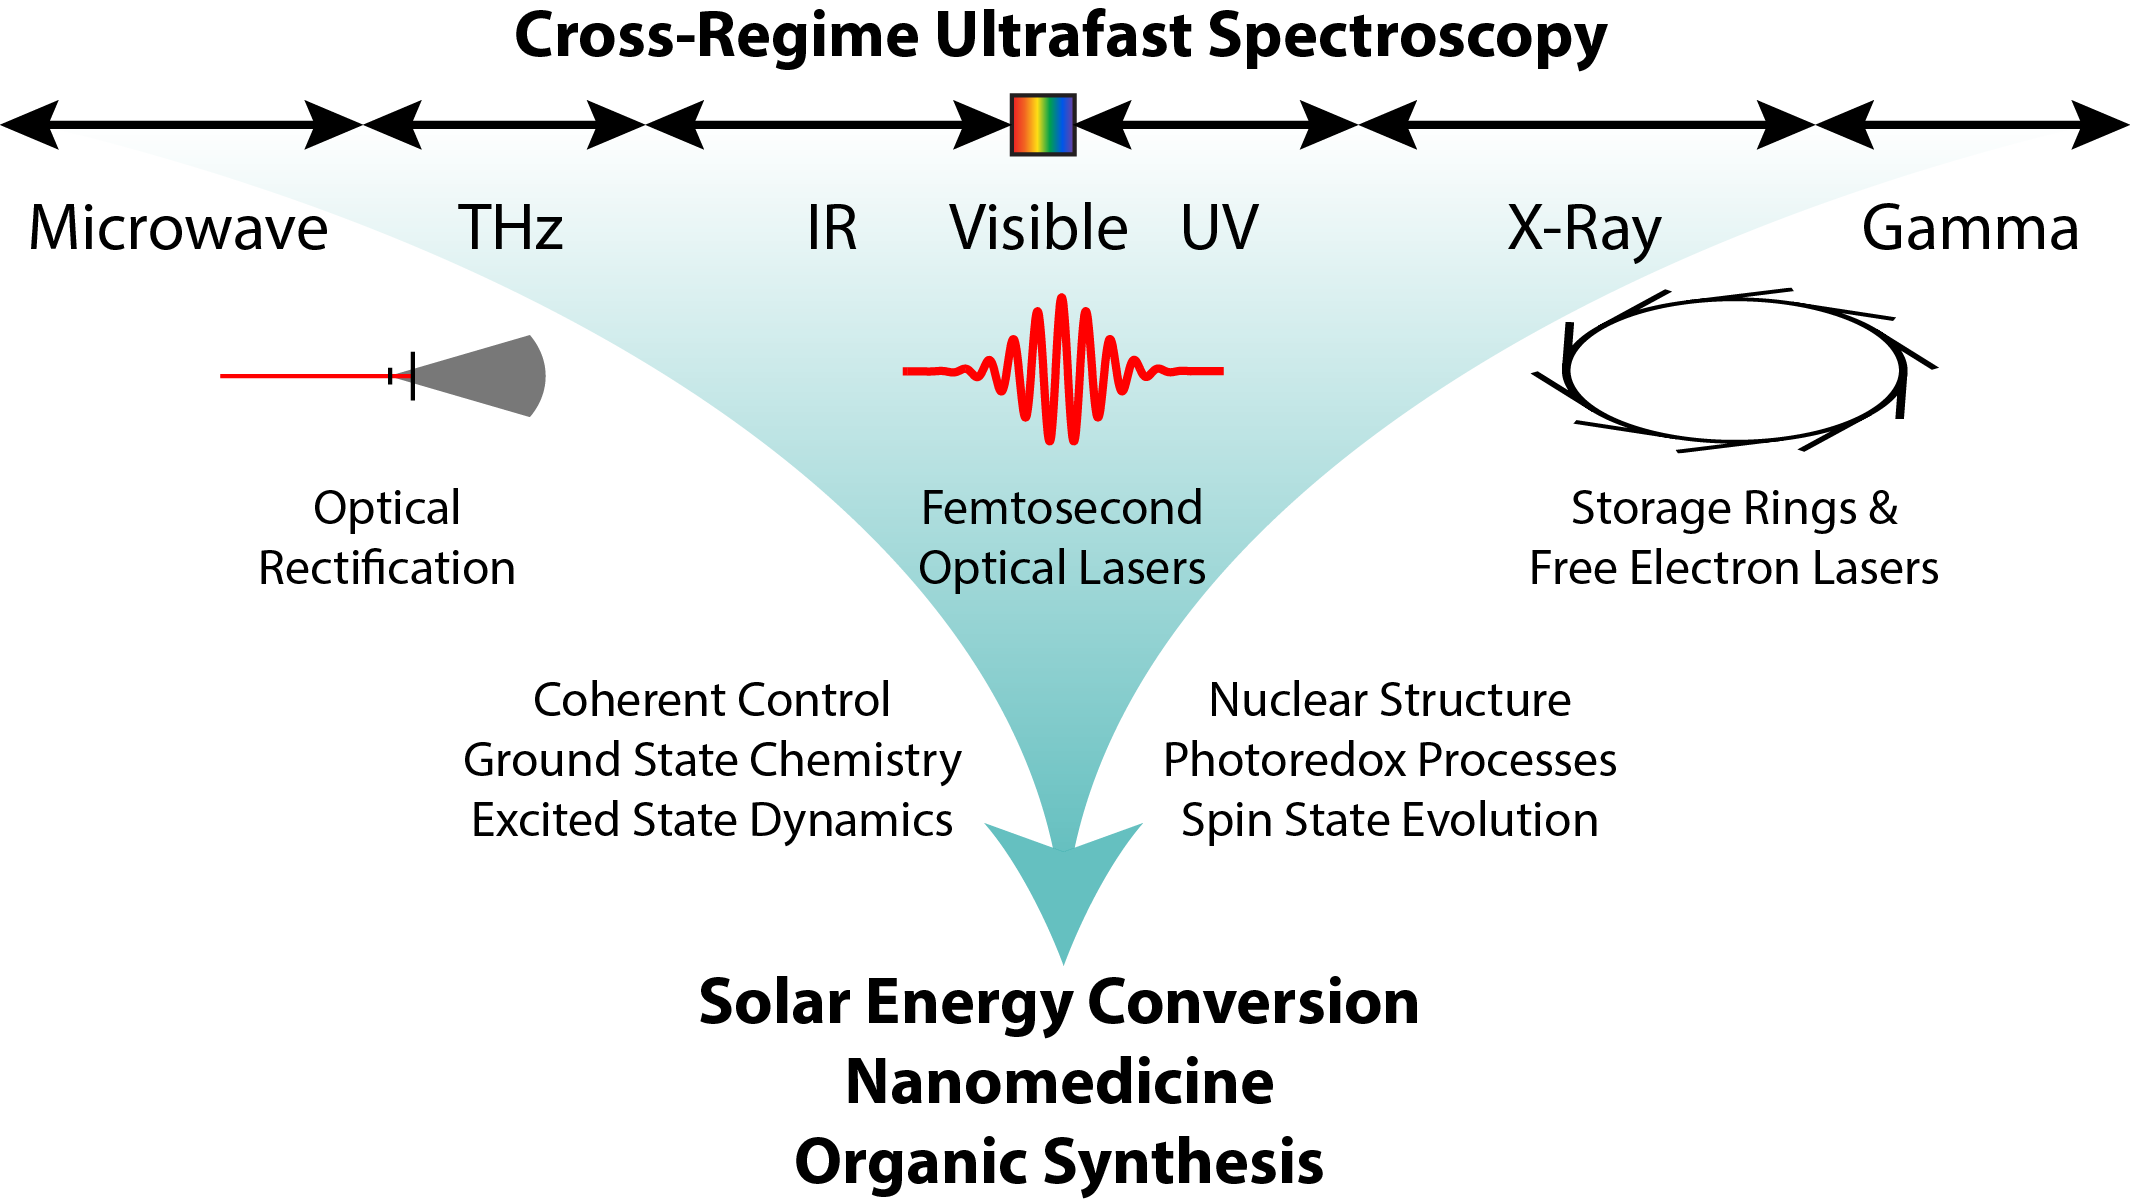 Summary of cross-regime ultrafast spectroscopy